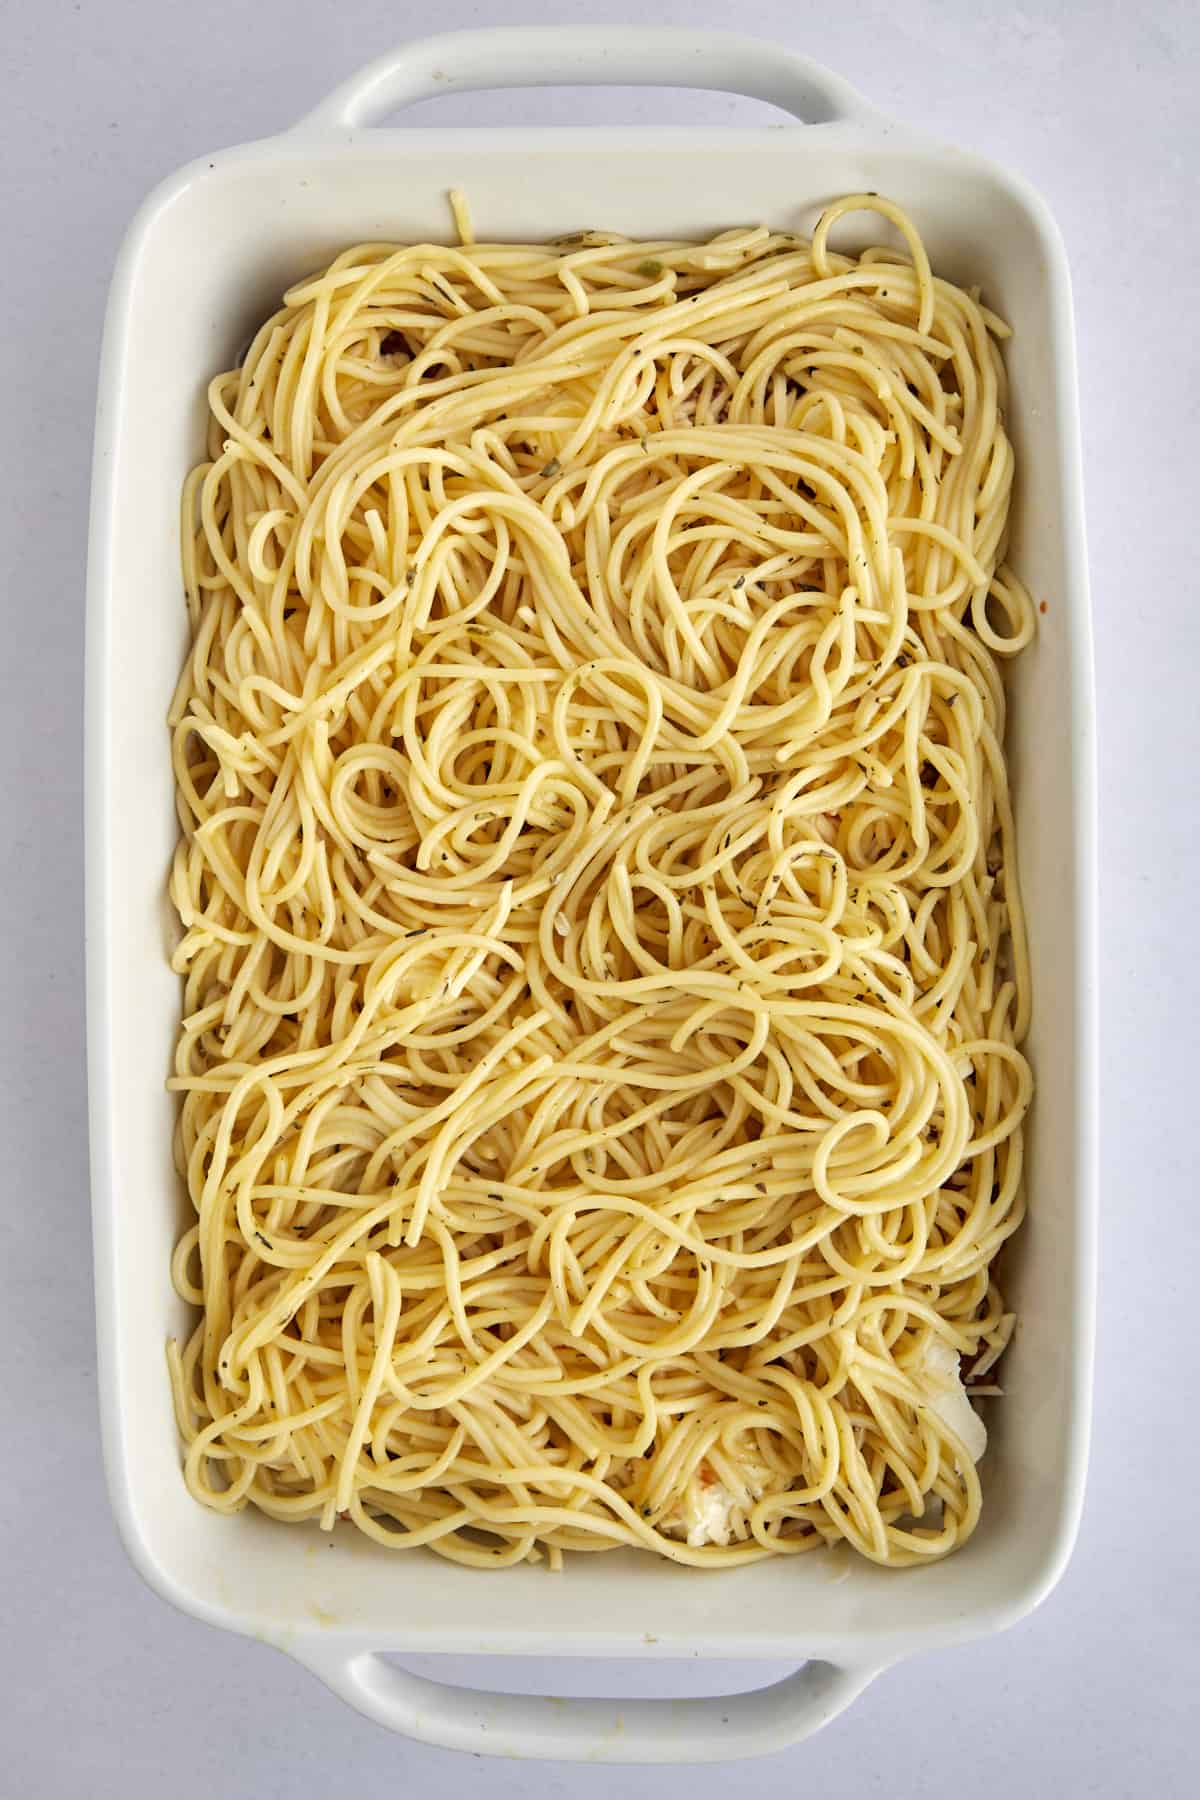 spaghetti noodles in a casserole dish